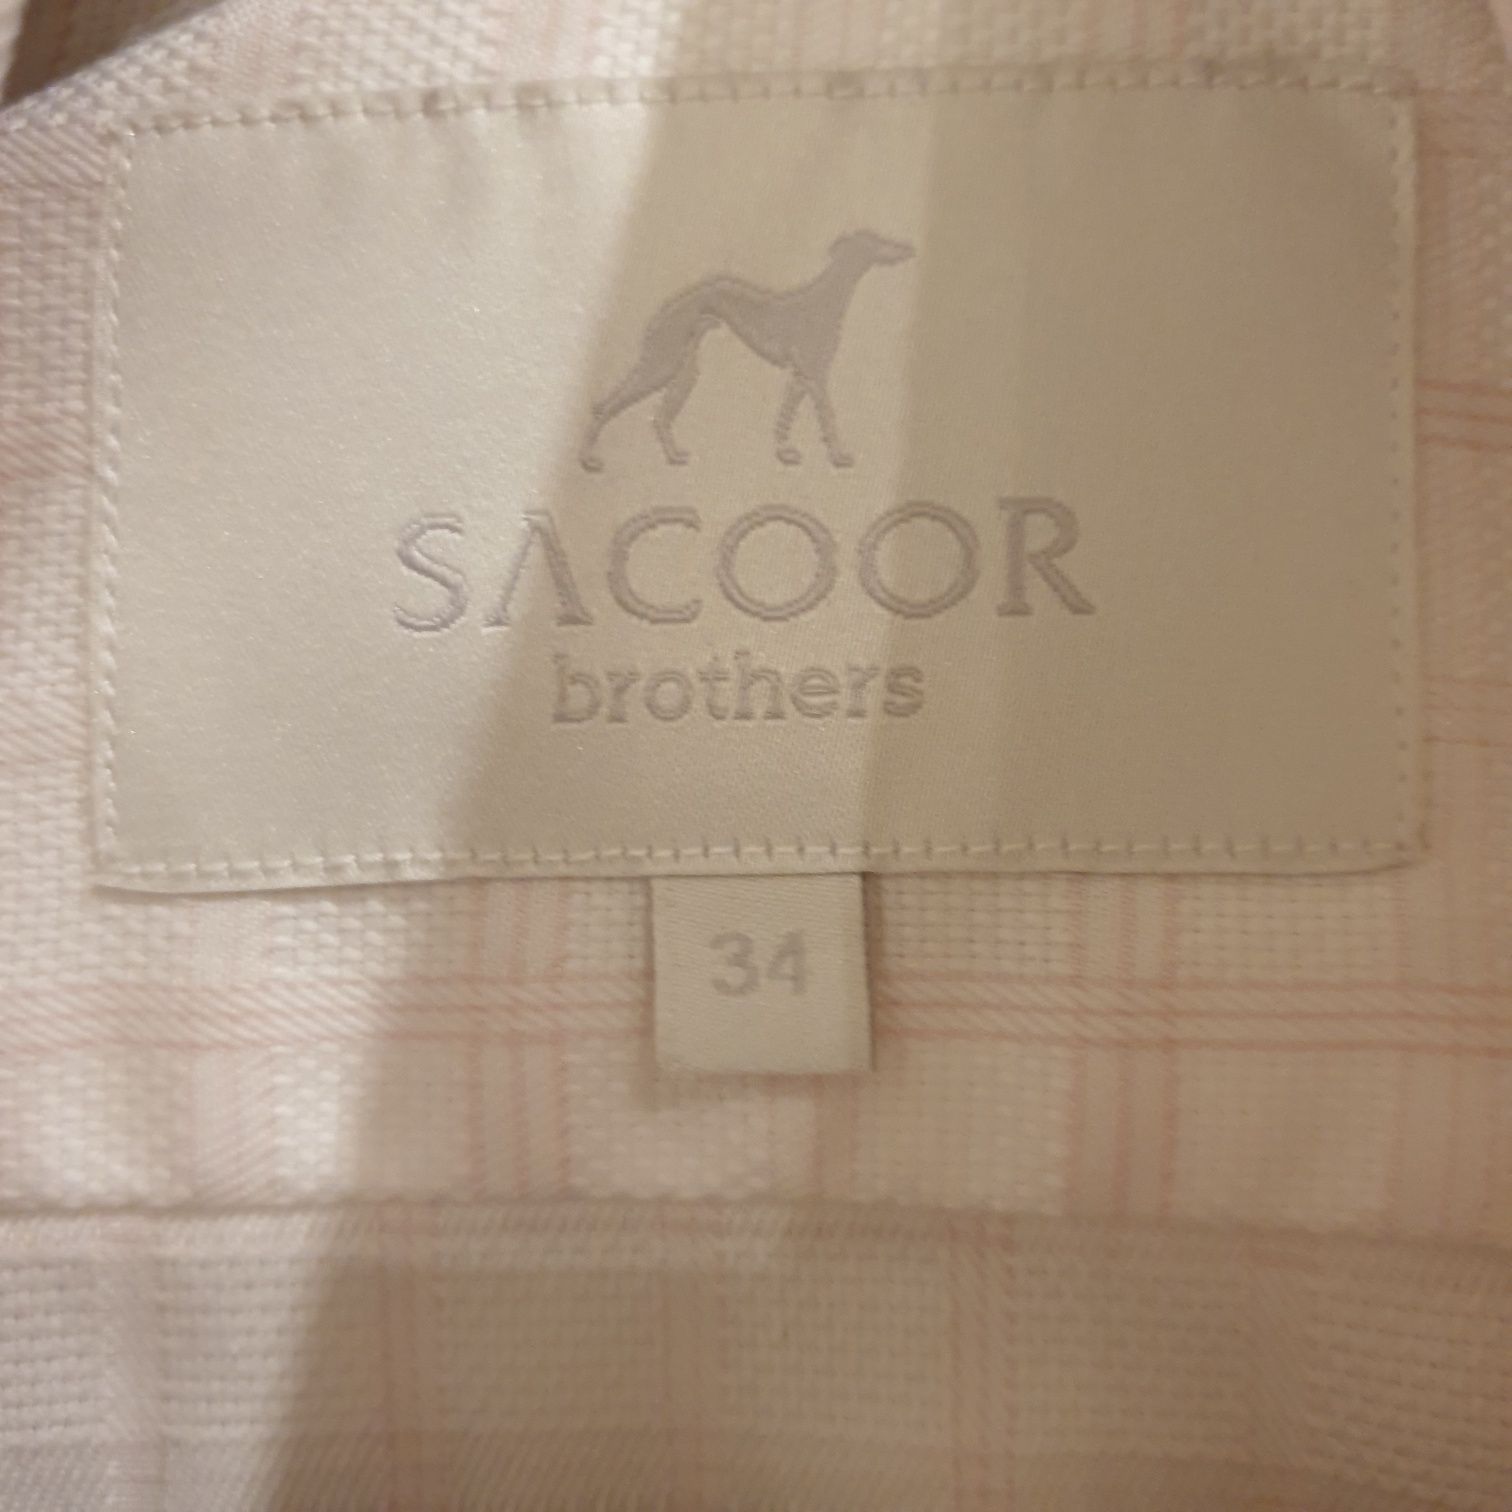 Camisa Sacoor 34